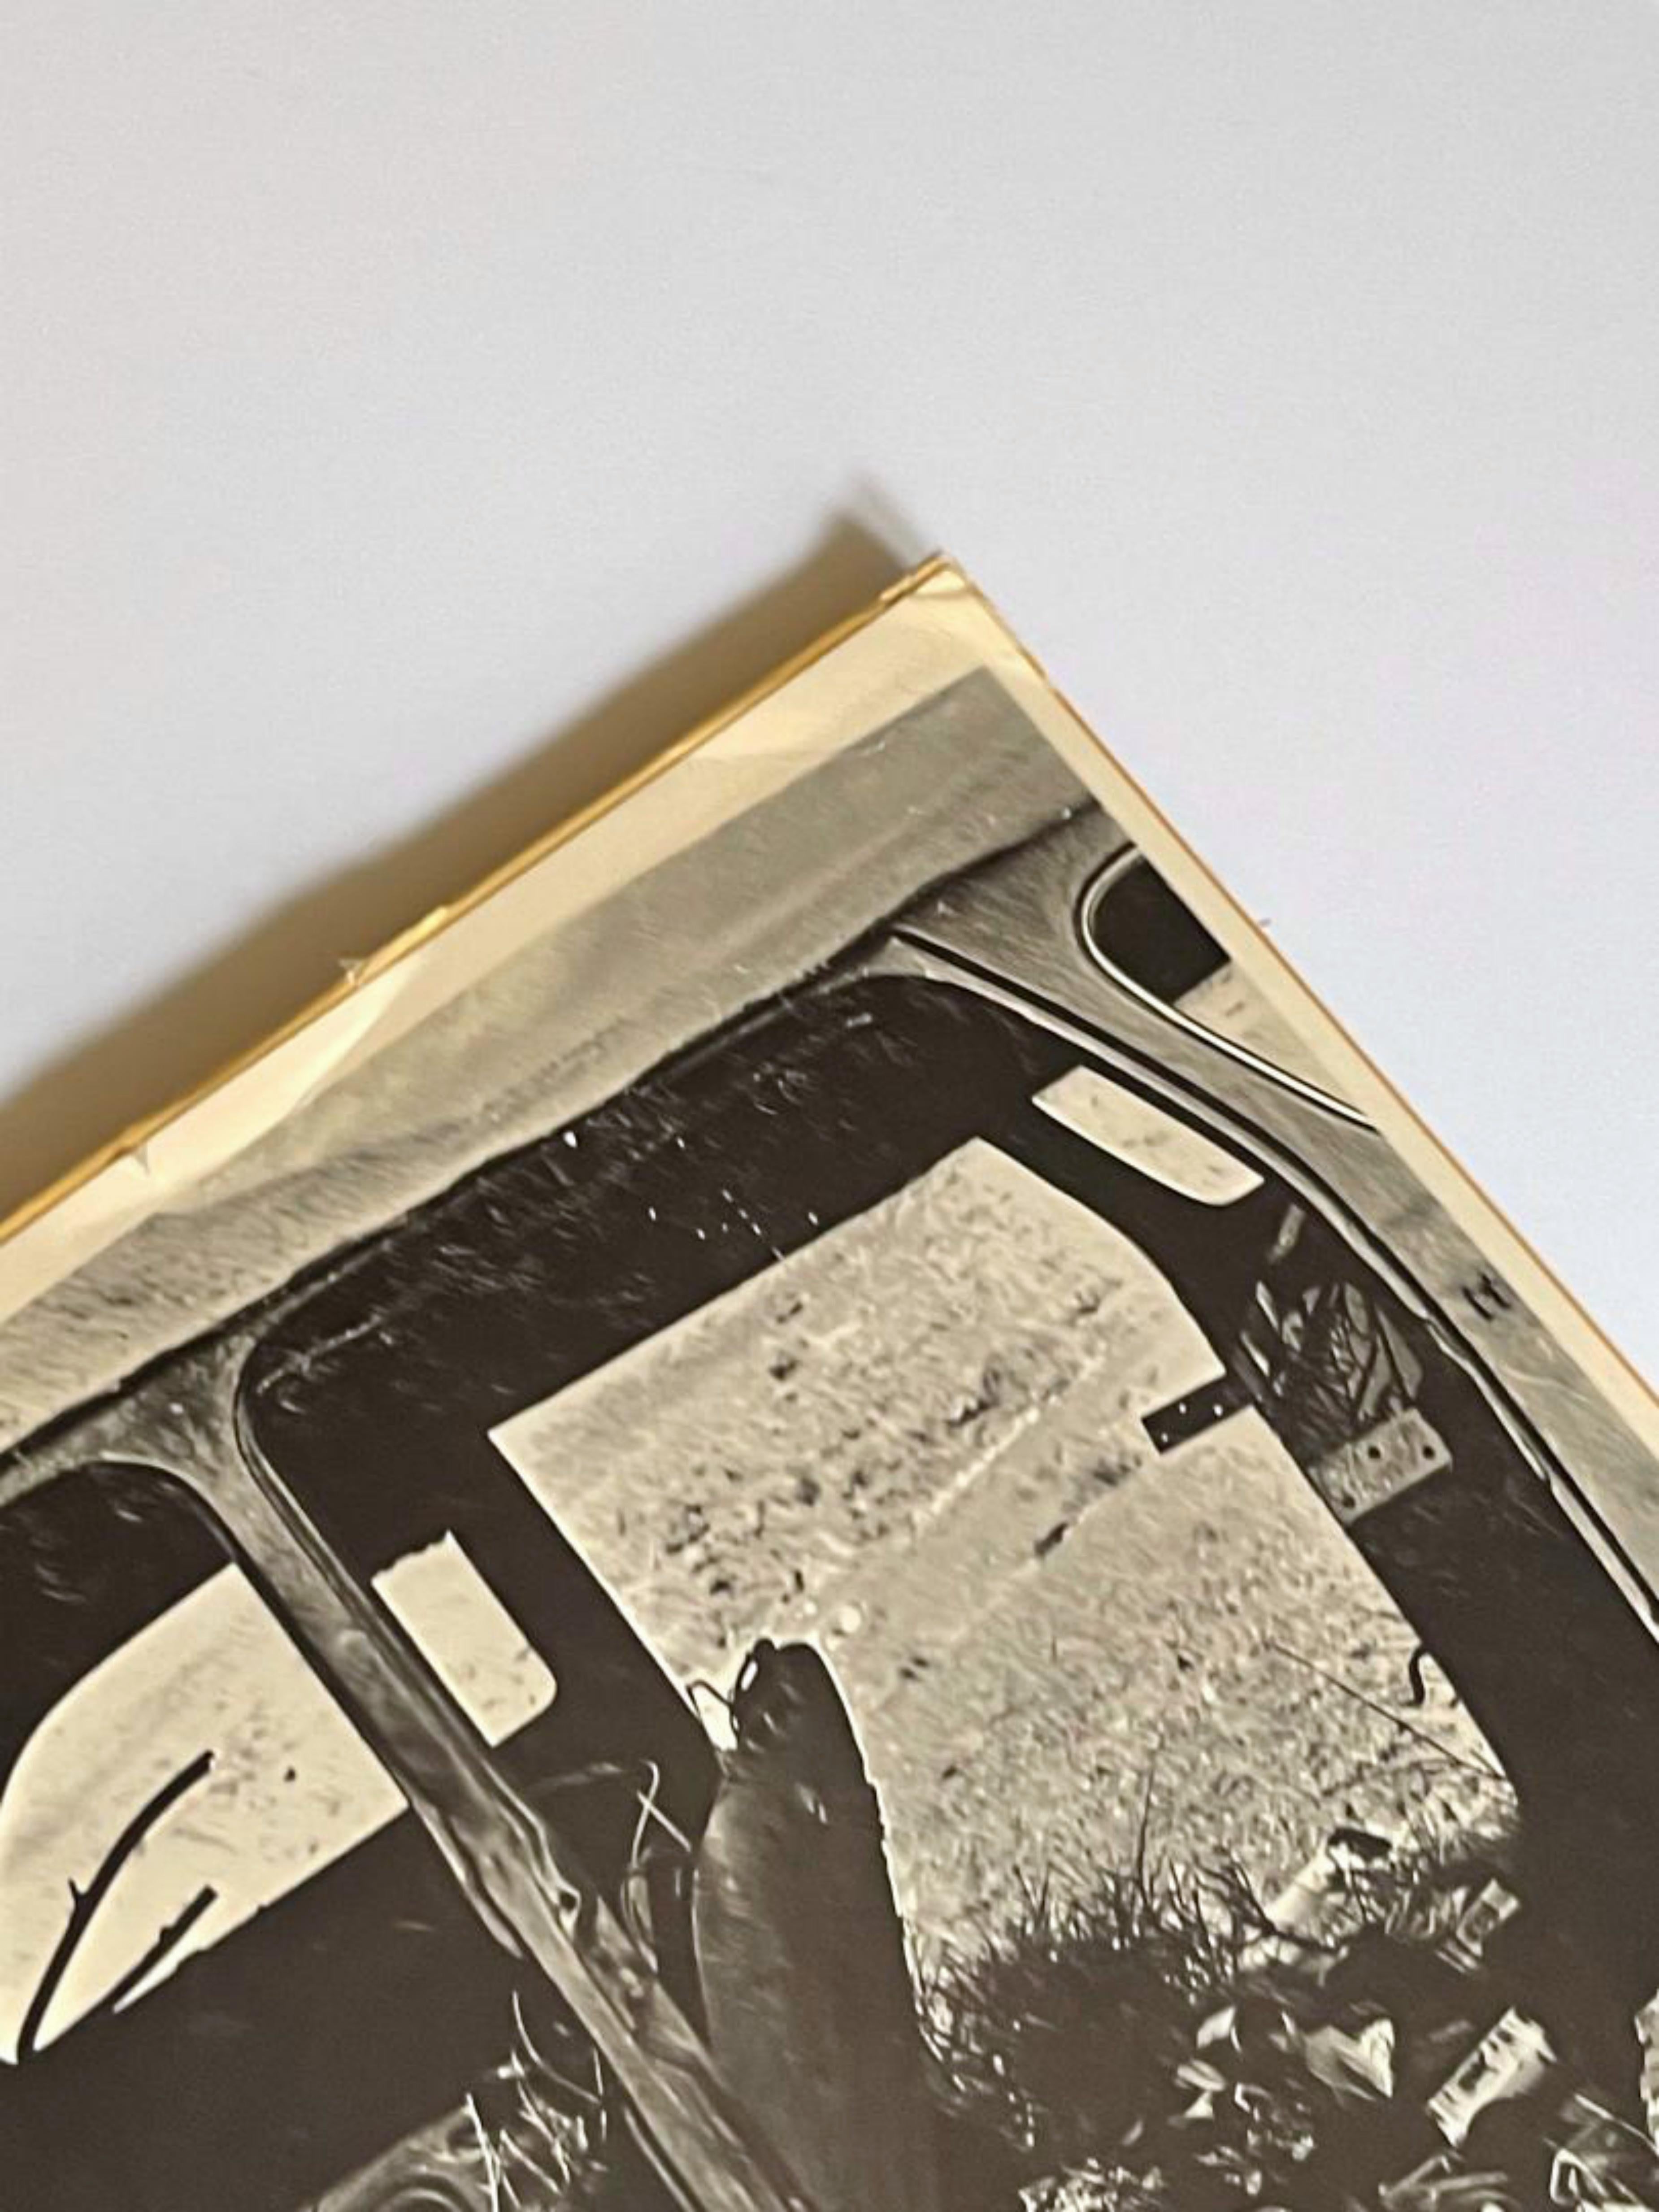 Robert Rauschenberg
Tag der Erde, 1970
Offset-Lithographie
Platte signiert und datiert auf der Vorderseite
Herausgeber: Castelli Grafiken
33 1/2 × 22 1/4 Zoll
Ungerahmt
Dies ist das Originalplakat aus dem Jahr 1970, eine Offsetlithografie.